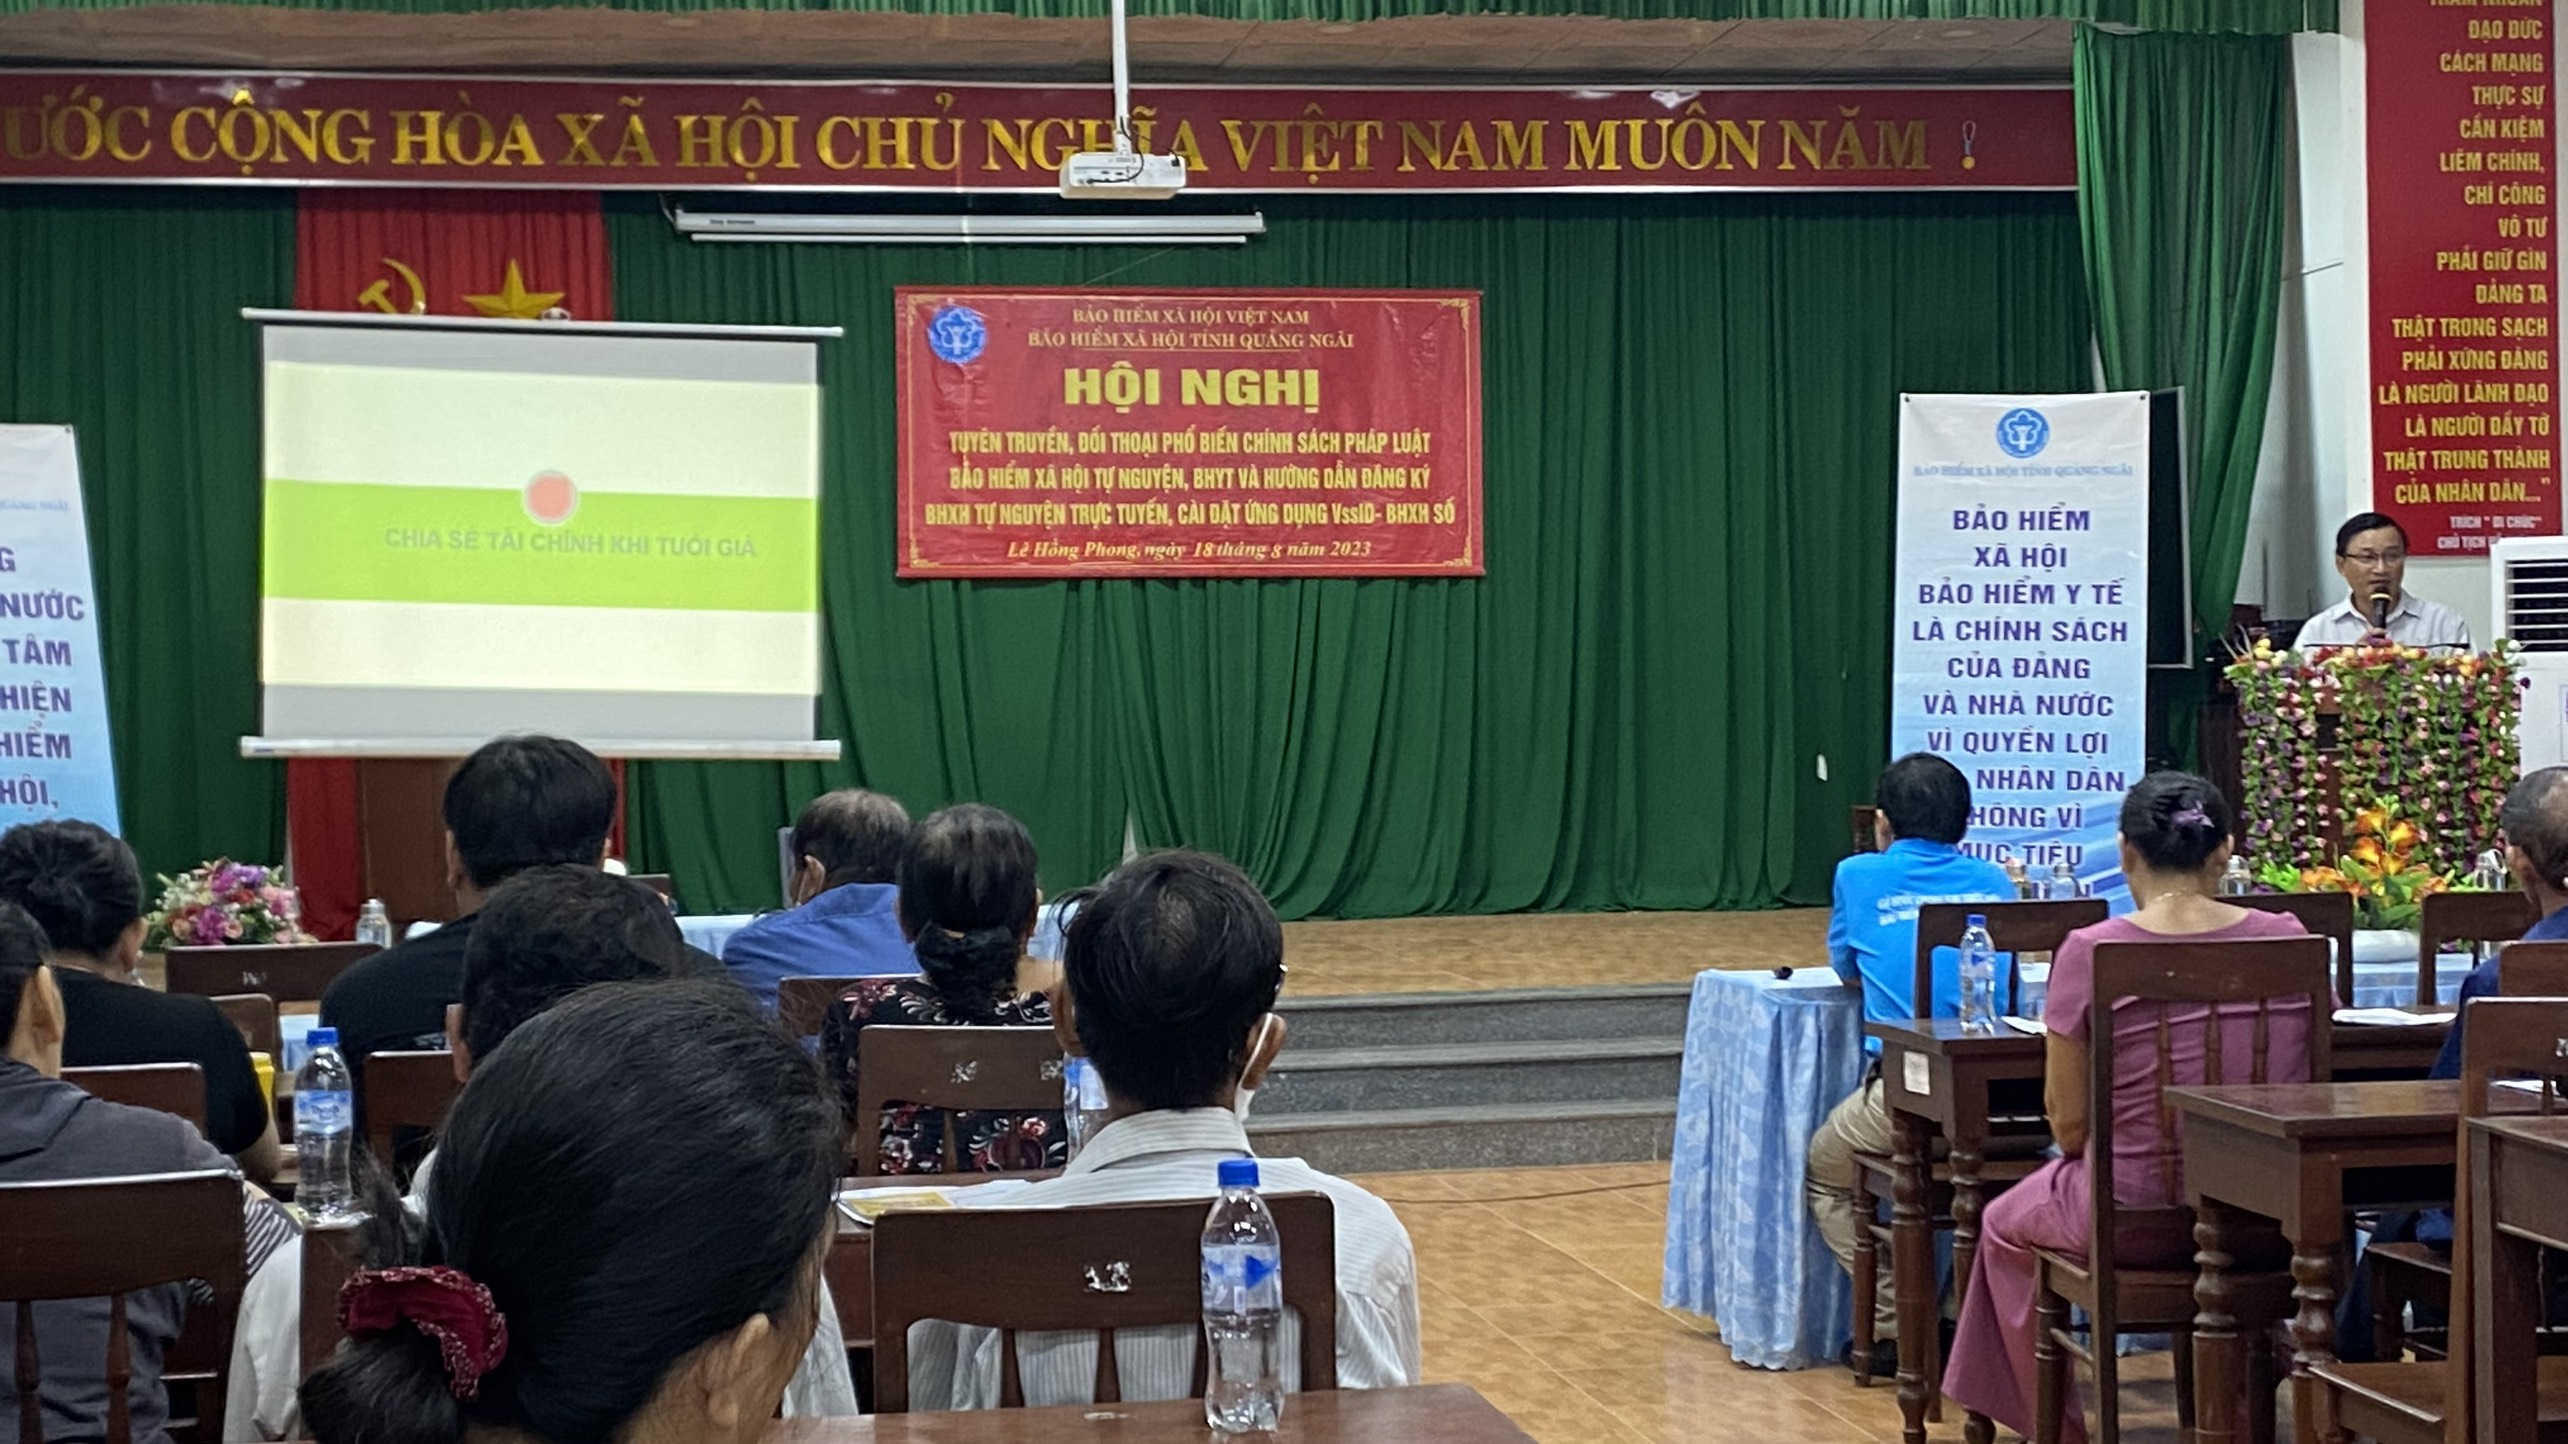 UBND phường Lê Hồng Phong phối hợp với Bảo hiểm Xã hội tỉnh Quảng Ngãi tổ chức Hội nghị tuyên truyền, đối thoại phổ biến chính sách pháp luật bảo hiểm xã hội tự nguyện, bảo hiểm y tế (lần 2).